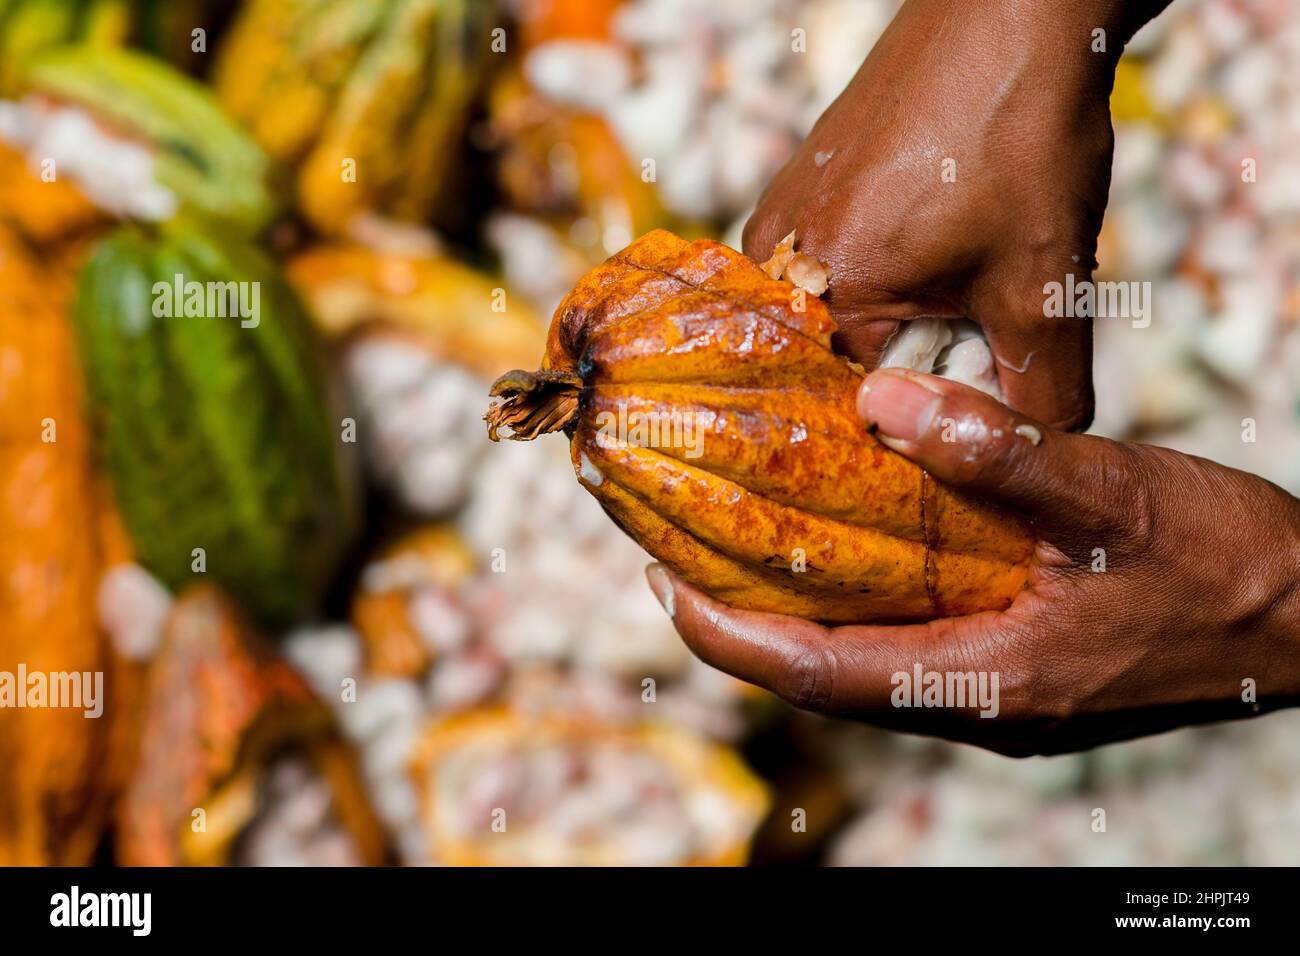 Un agricoltore afro-colombiano separa i semi di cacao polpico da un cialda di cacao durante un raccolto in una fattoria tradizionale di cacao a Cuernavaca, Cauca, Colombia. Foto Stock